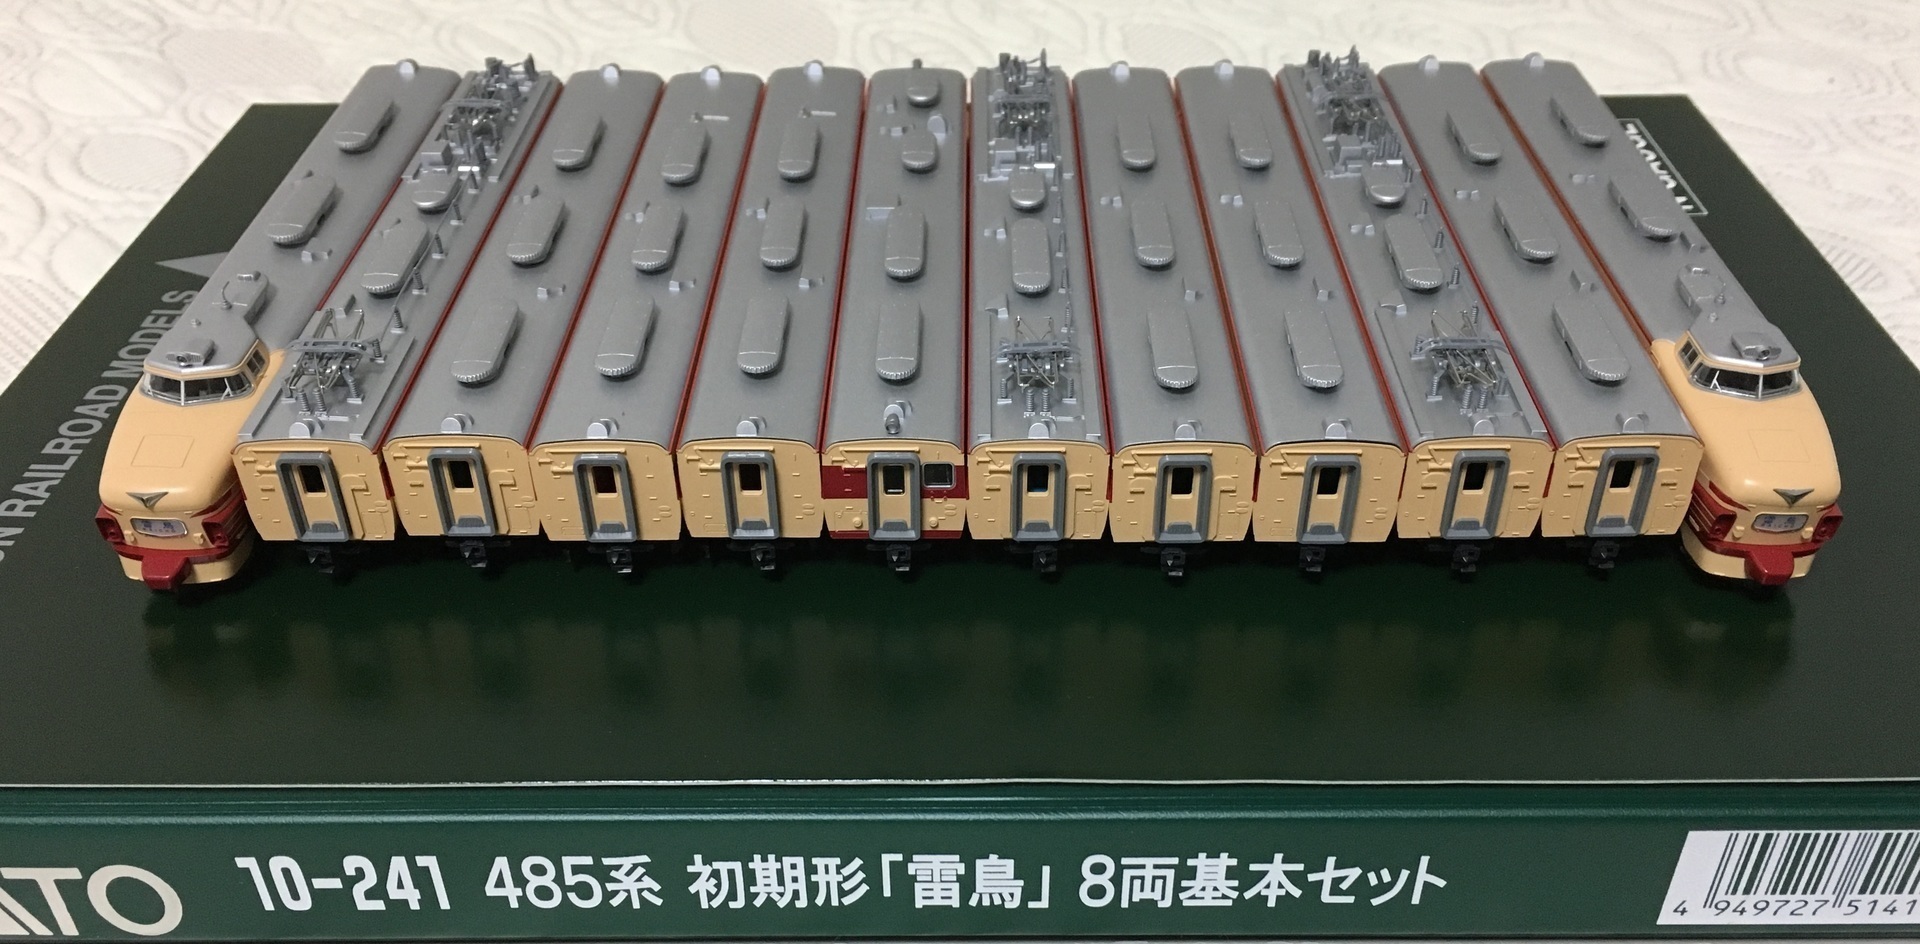 カトー KATO 10-241 485系 初期形 雷鳥 8両基本セットばらし品 クハ481-121